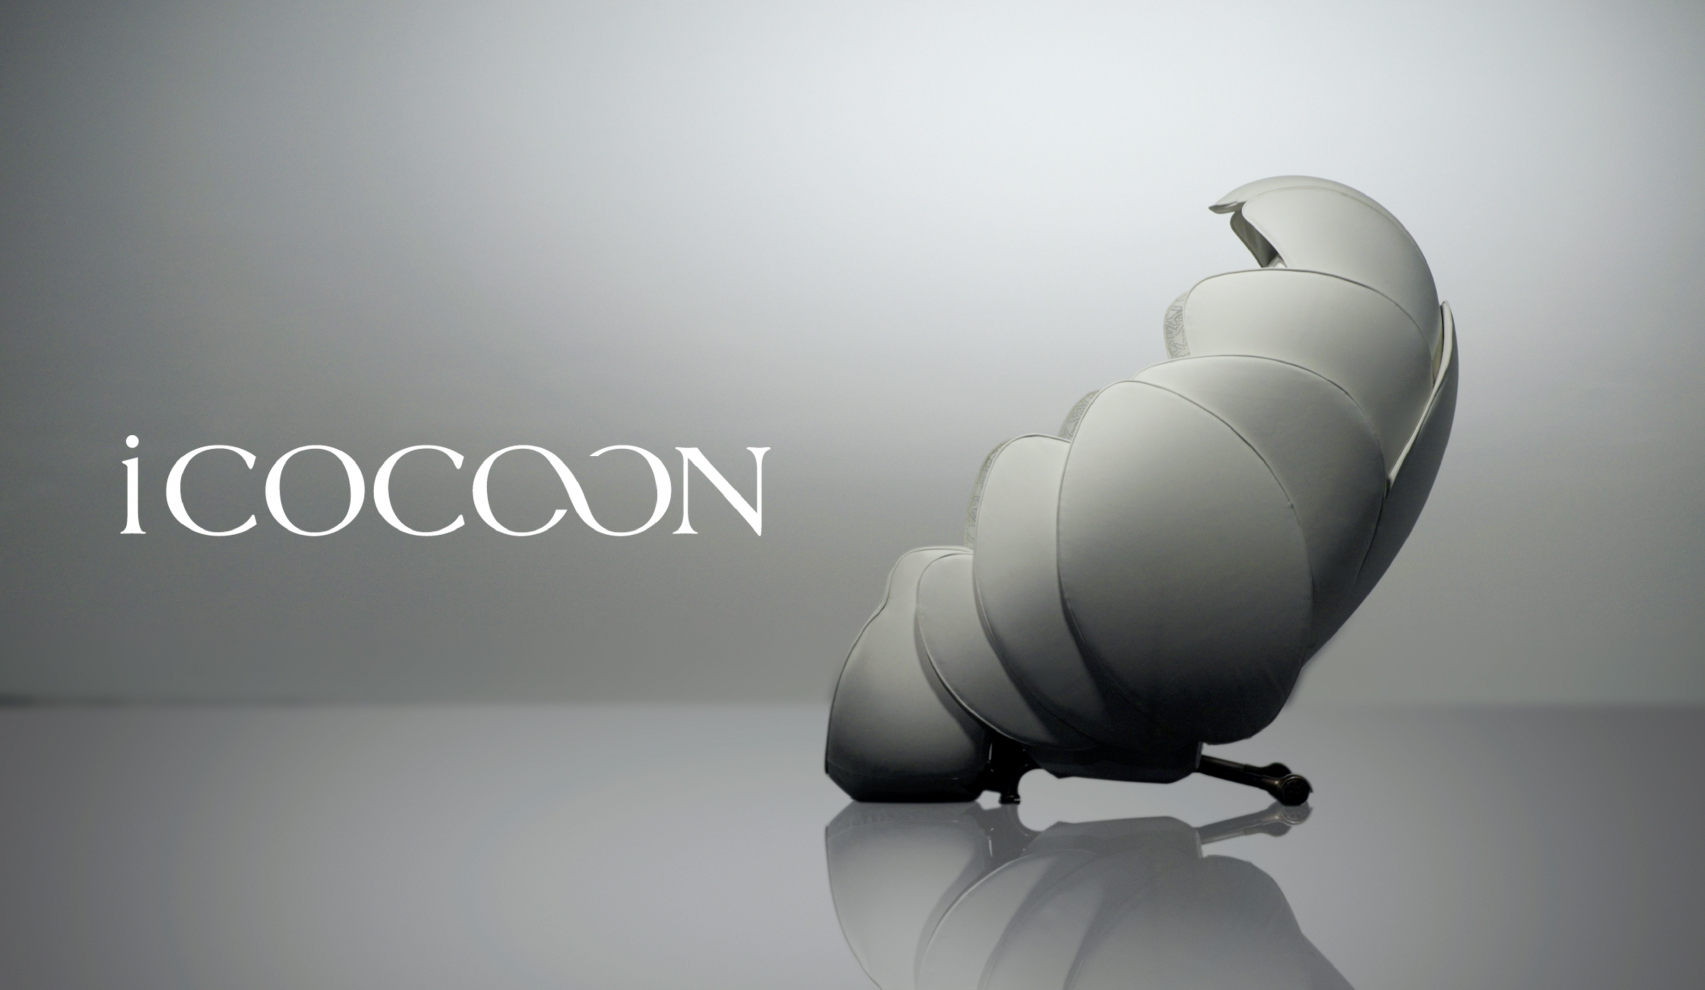 iCOCOON